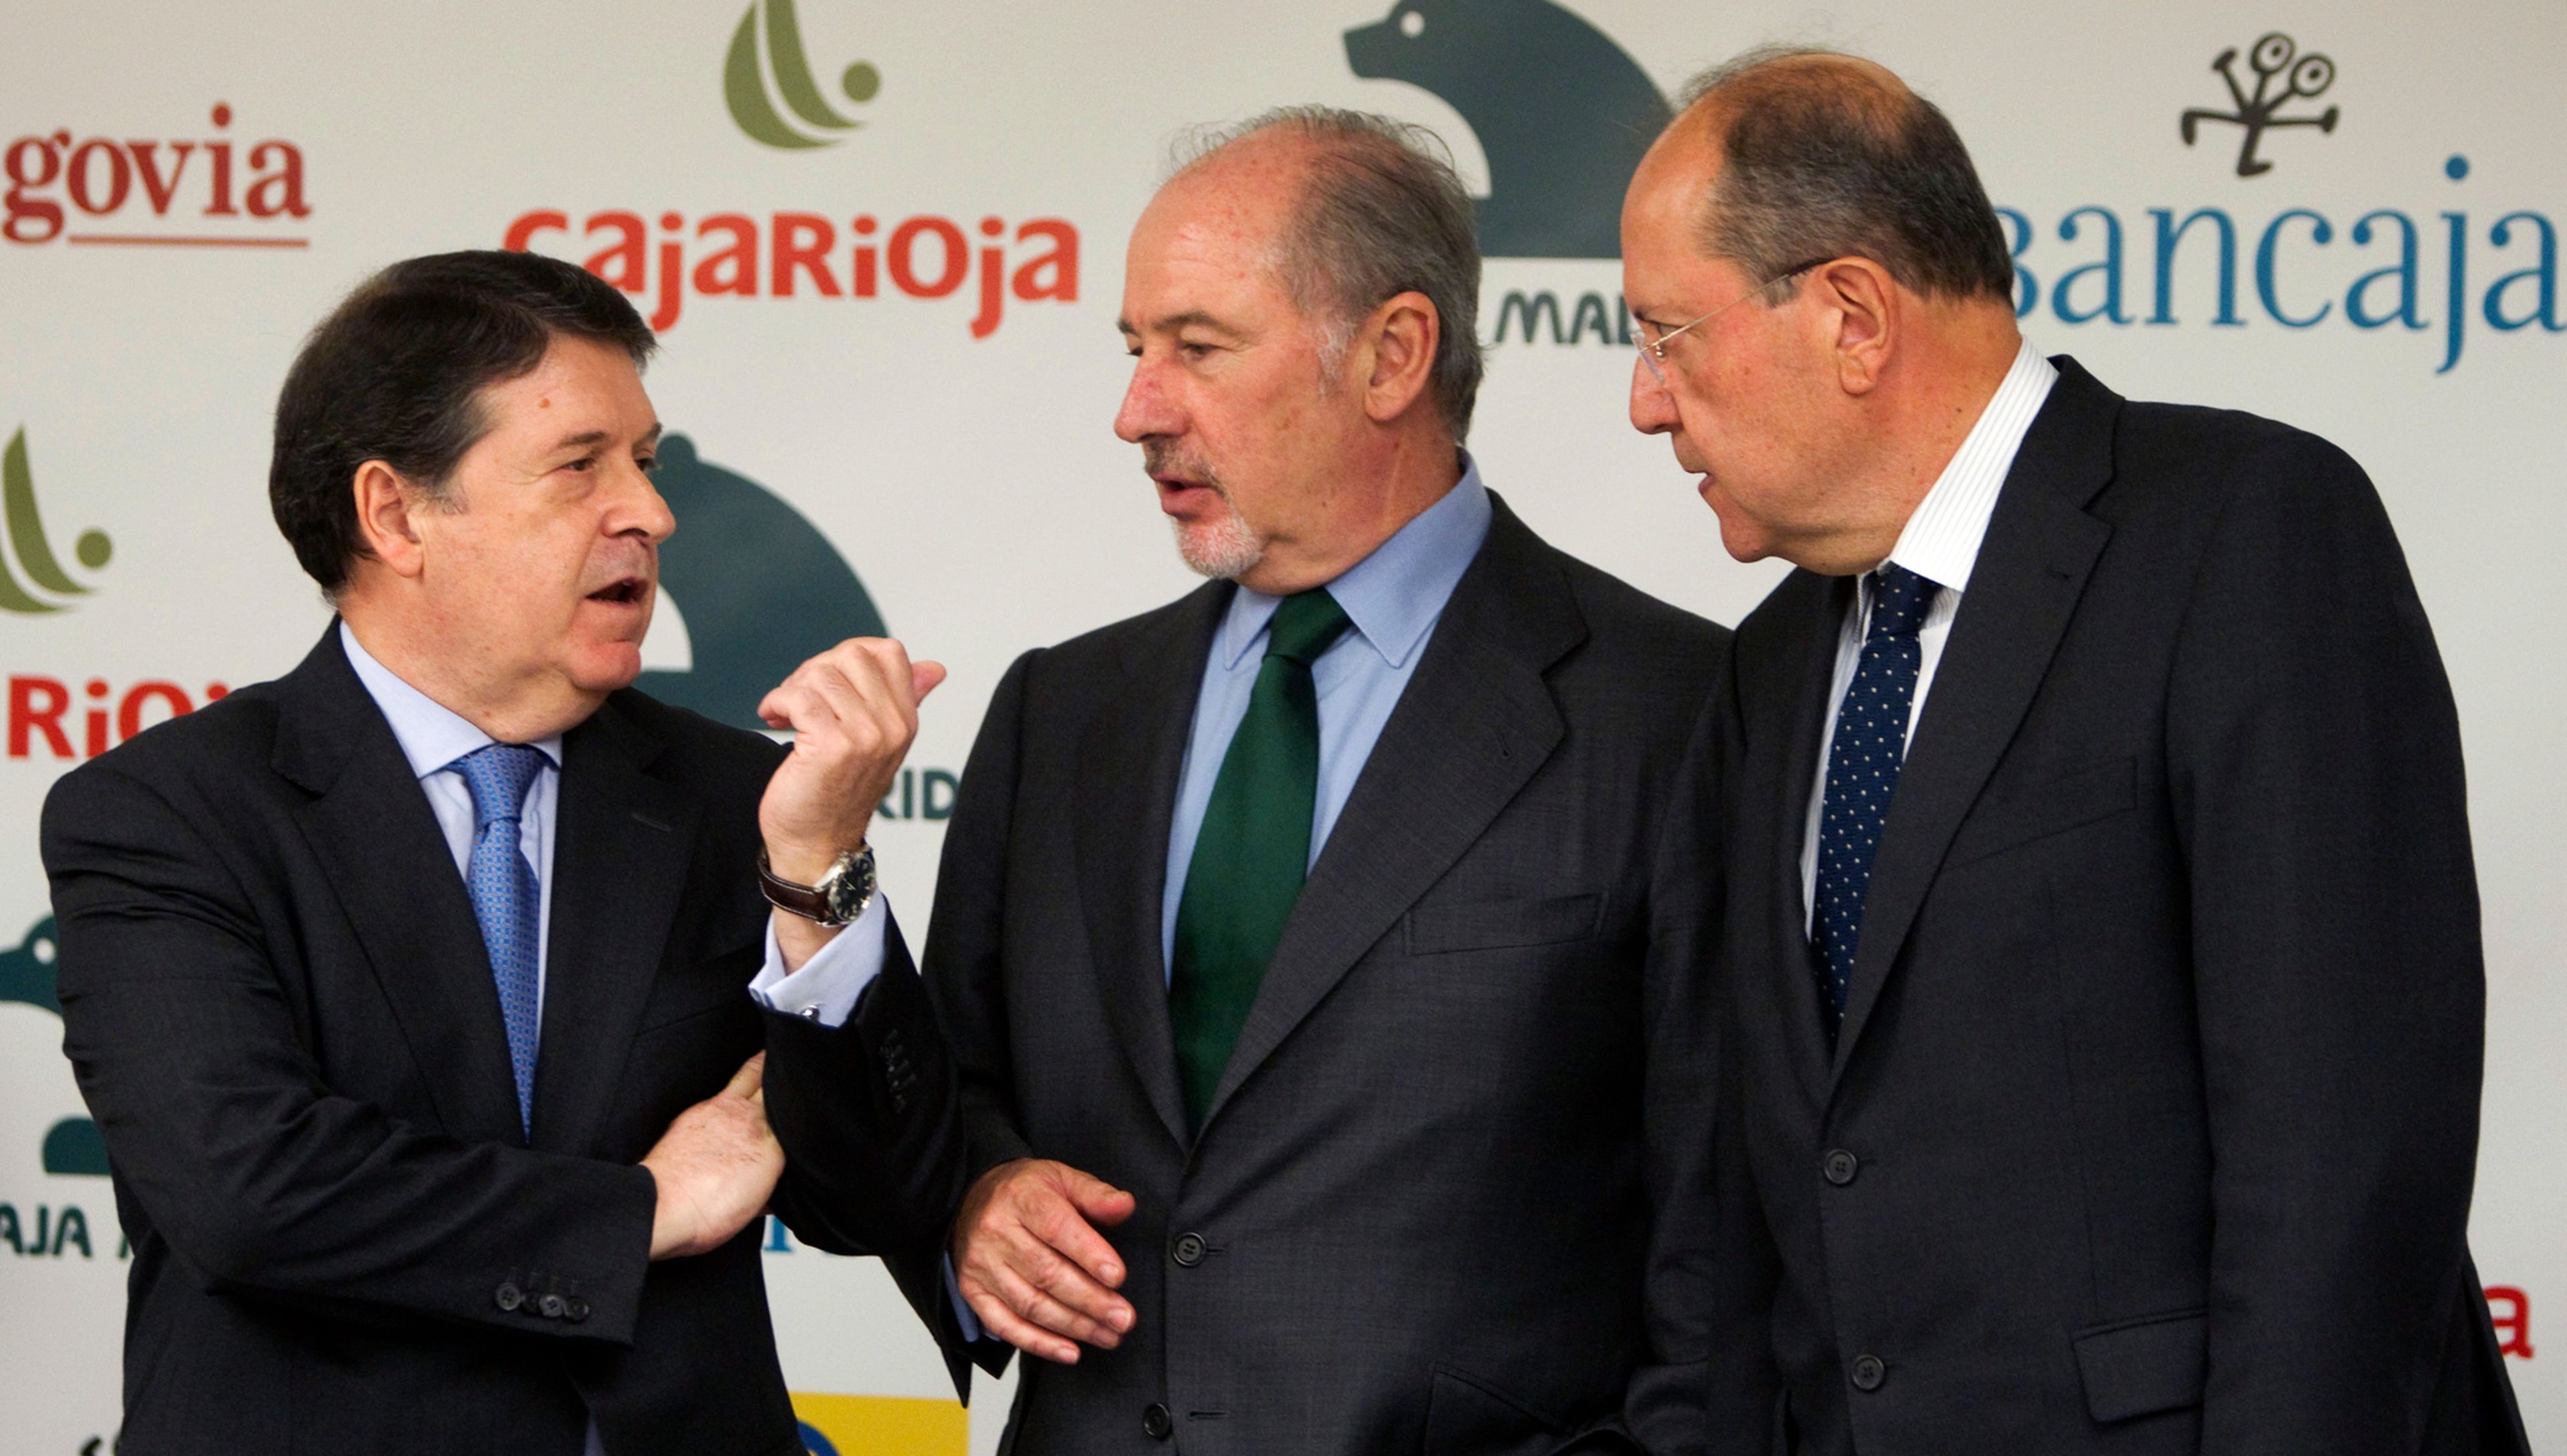 Los presidentes de Bancaja, José Luis Olivas, Caja Madrid, Rodrigo Rato, y Caja Insular de Canarias, José Manuel Suárez del Toro, tras anunciar la fusión de sus entidades.